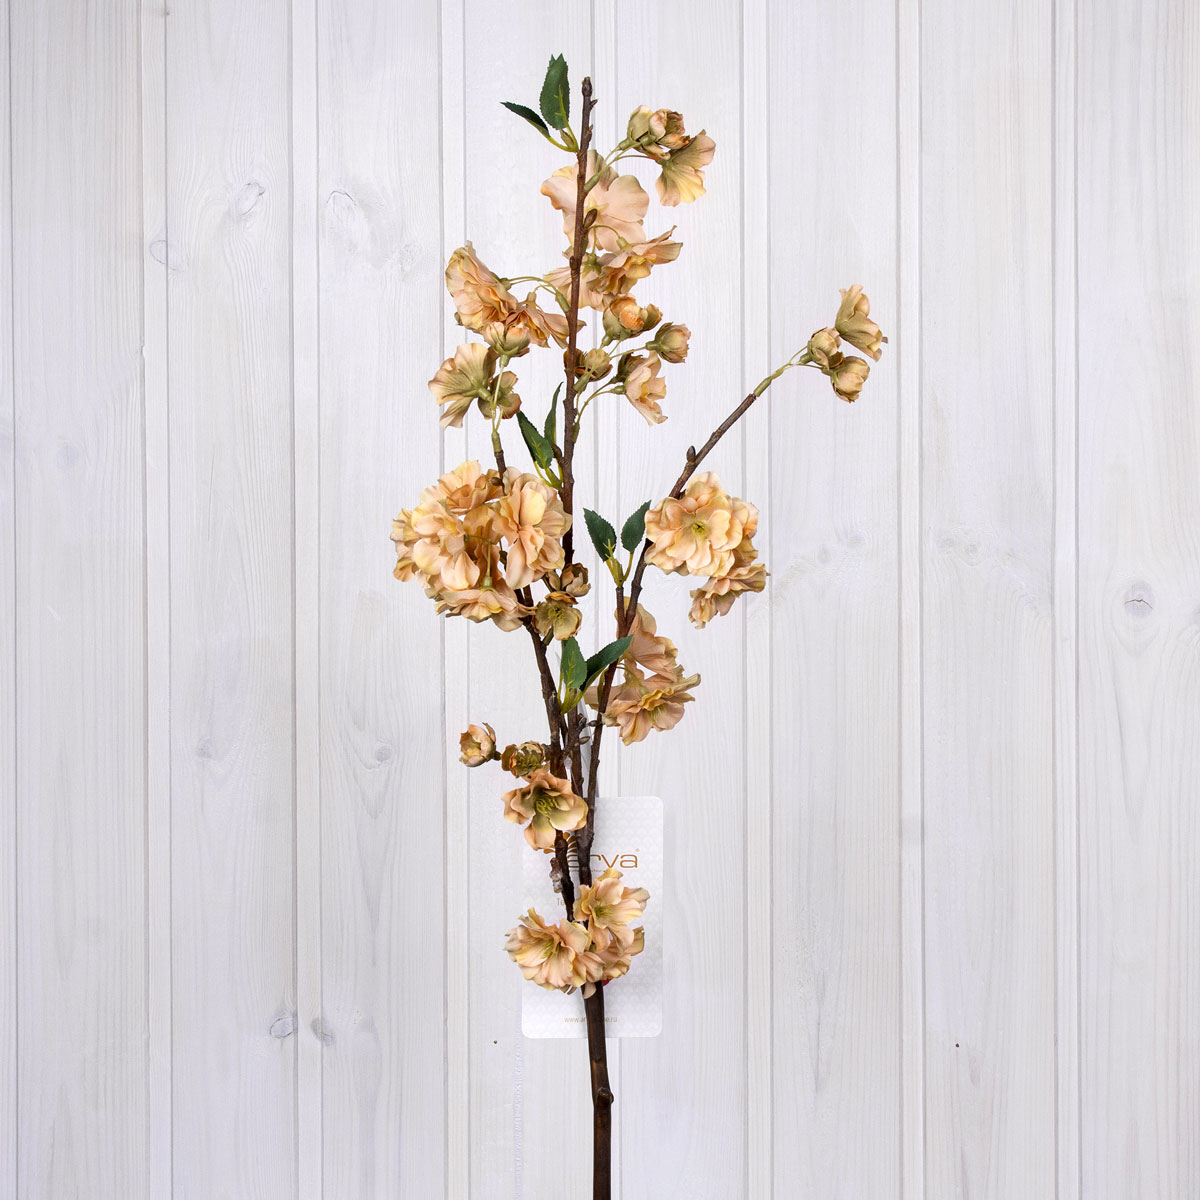 Искусственный цветок Peach Цвет: Кремовый (92 см), размер 92 см ar431730 Искусственный цветок Peach Цвет: Кремовый (92 см) - фото 1